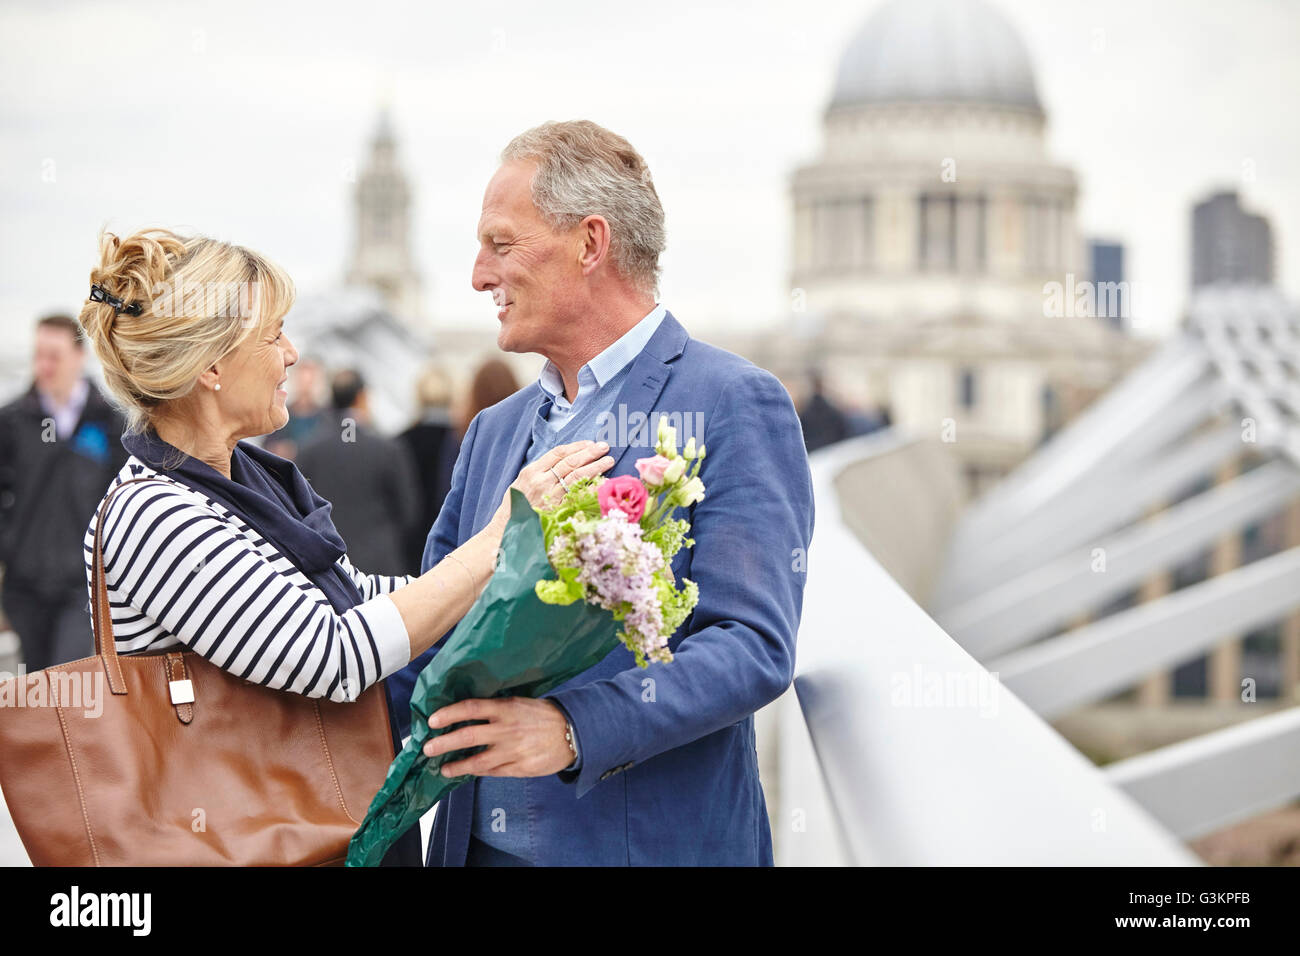 Couple mature dating romantique chaque message d'autres sur Millennium Bridge, London, UK Banque D'Images